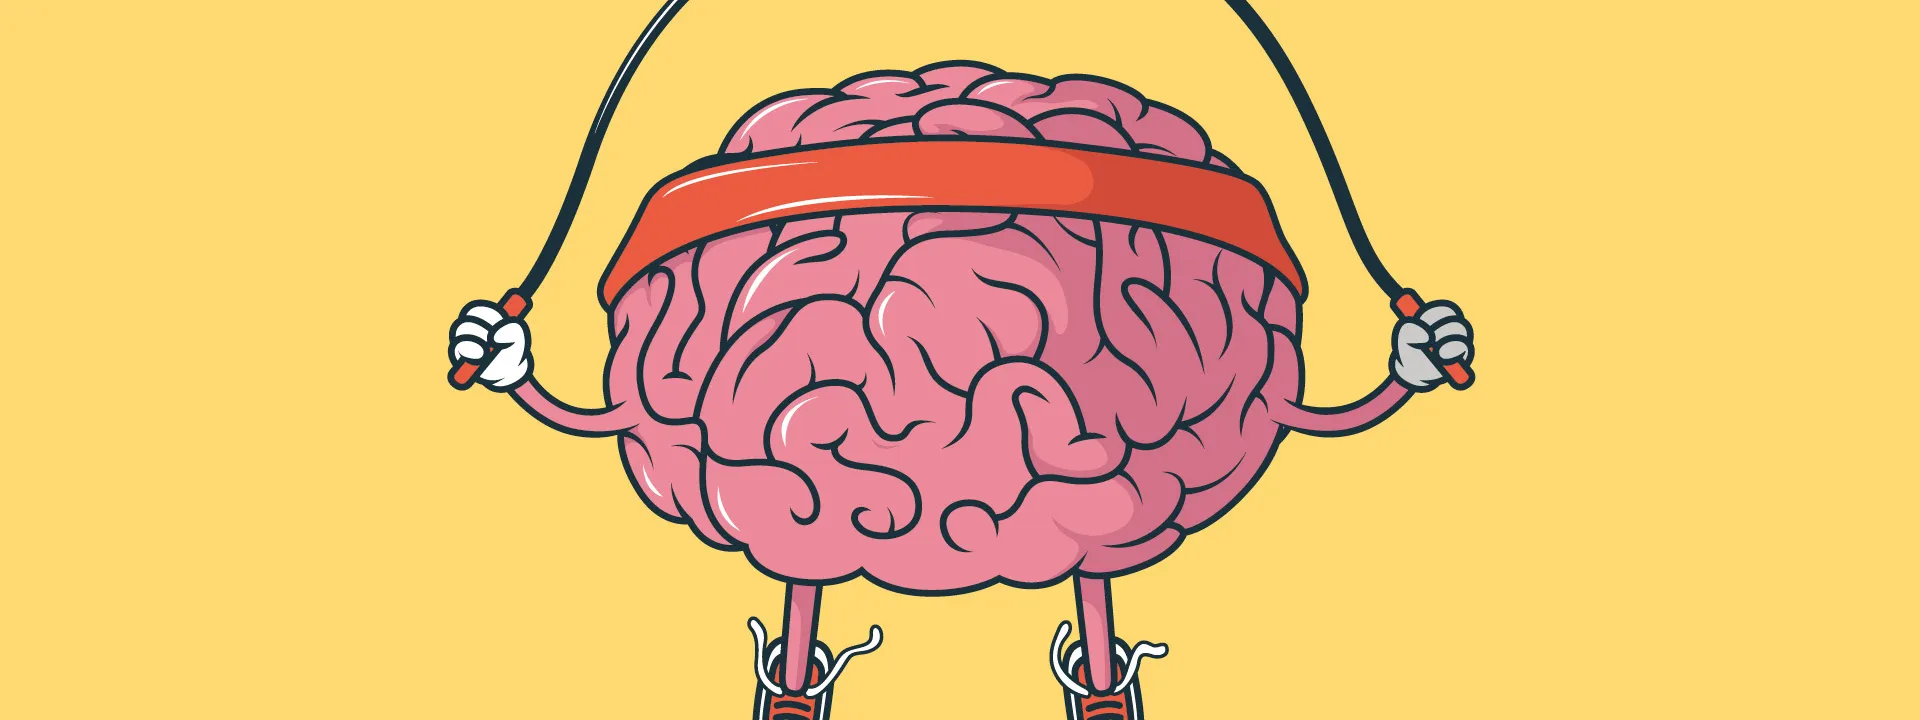 Ilustration eines seilhüpfenden Gehirns